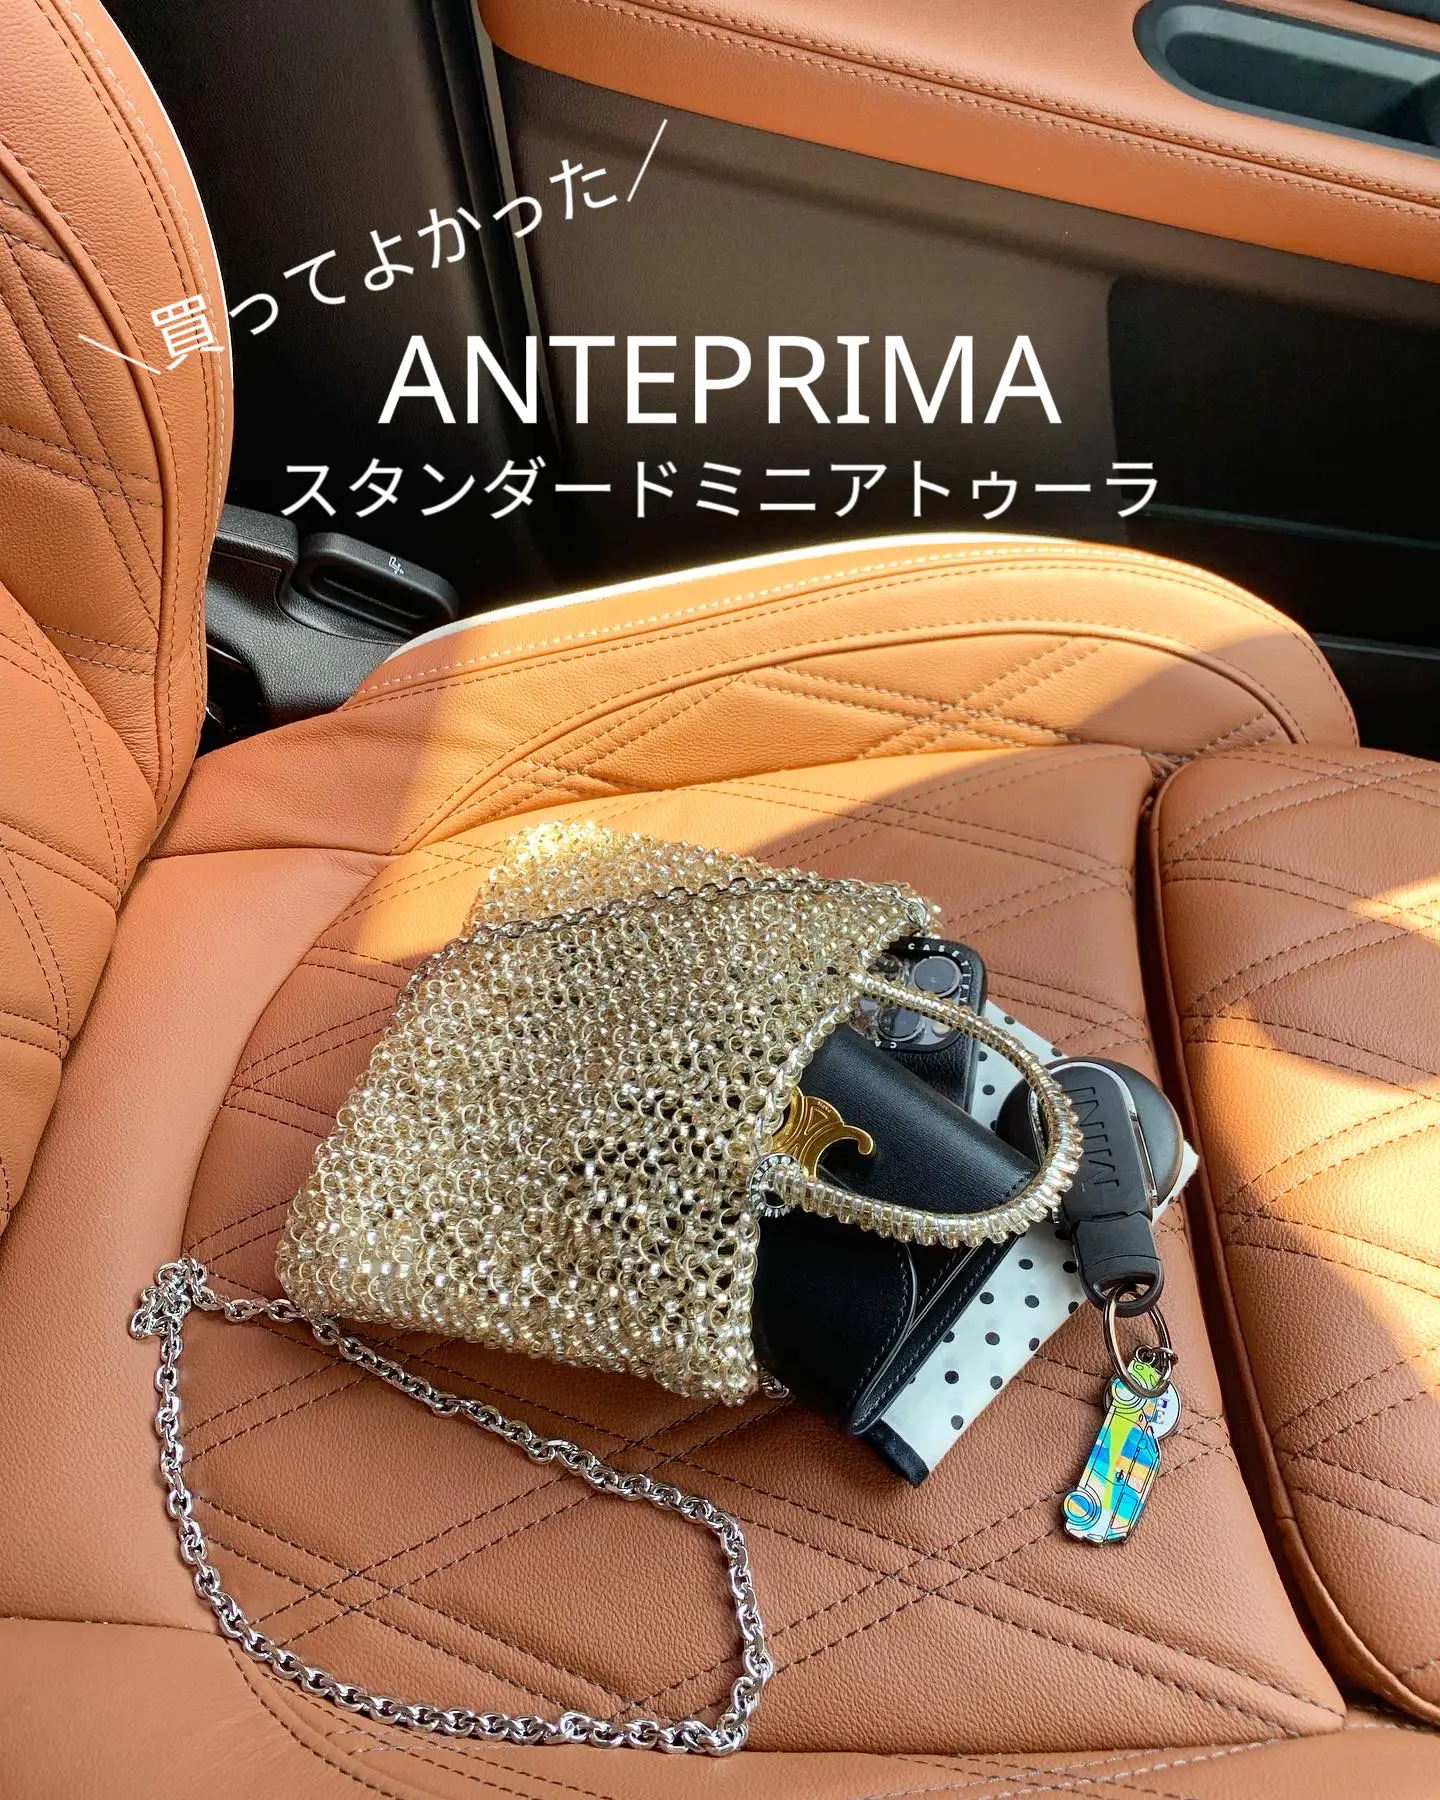 通販の ANTEPRIMA スタンダード ミニアトゥーラ | artfive.co.jp